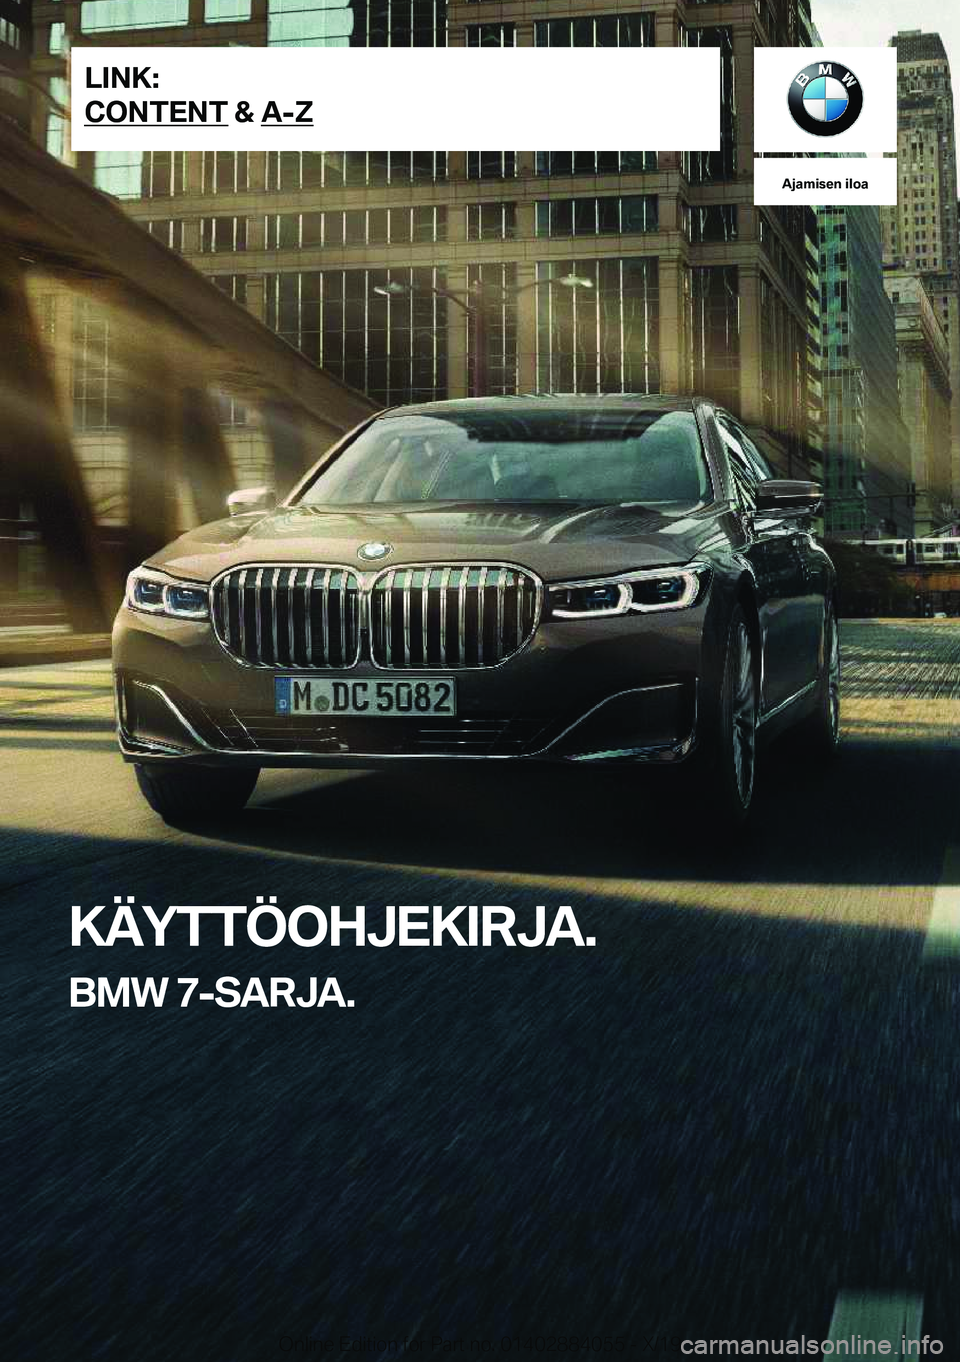 BMW 7 SERIES 2020  Omistajan Käsikirja (in Finnish) �A�j�a�m�i�s�e�n��i�l�o�a
�K�